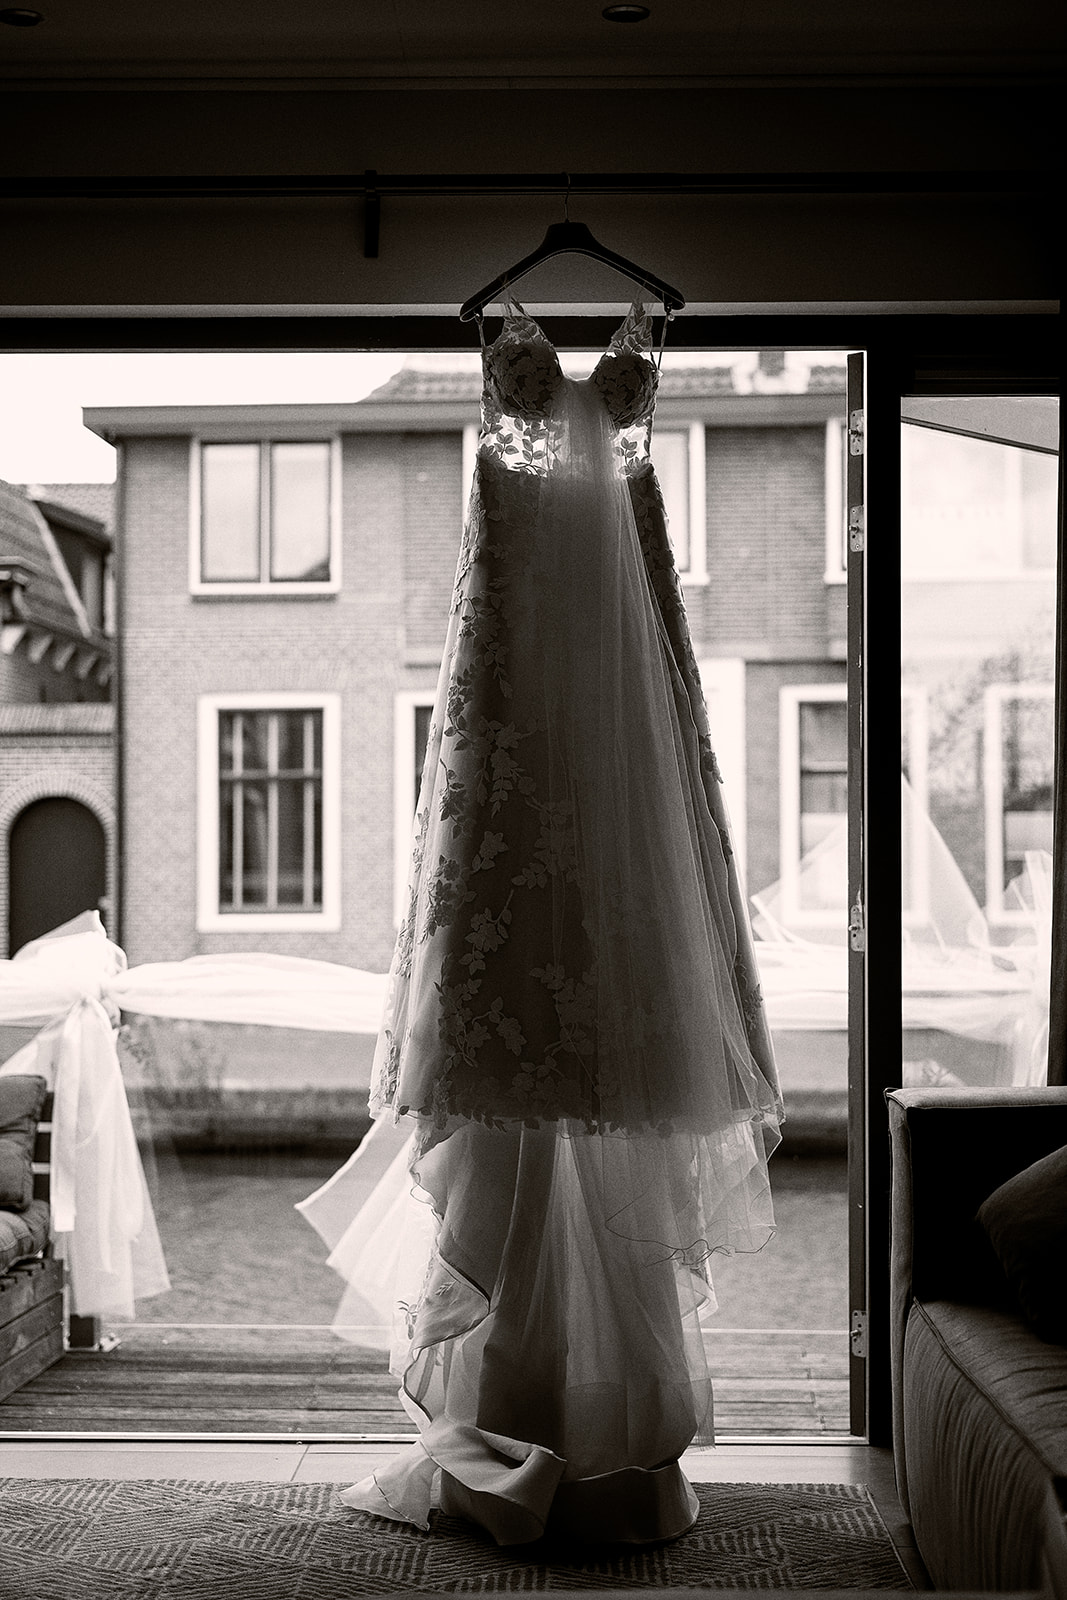 Kameryk's natuurlijke schoonheid als decor voor de bruidsfotografie van Milou en Theron, vastgelegd door Stefan Segers